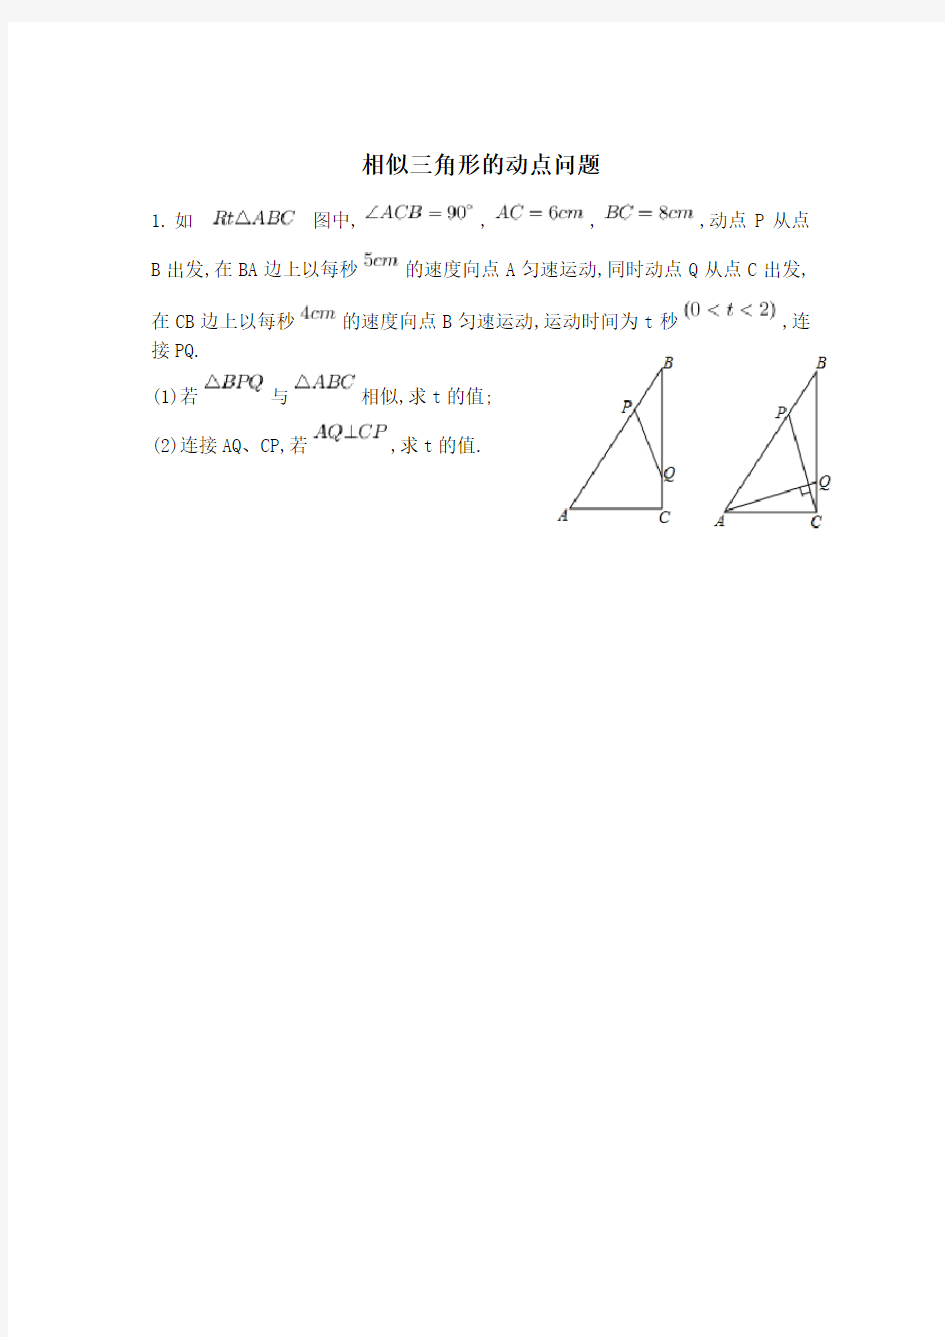 相似三角形的动点问题